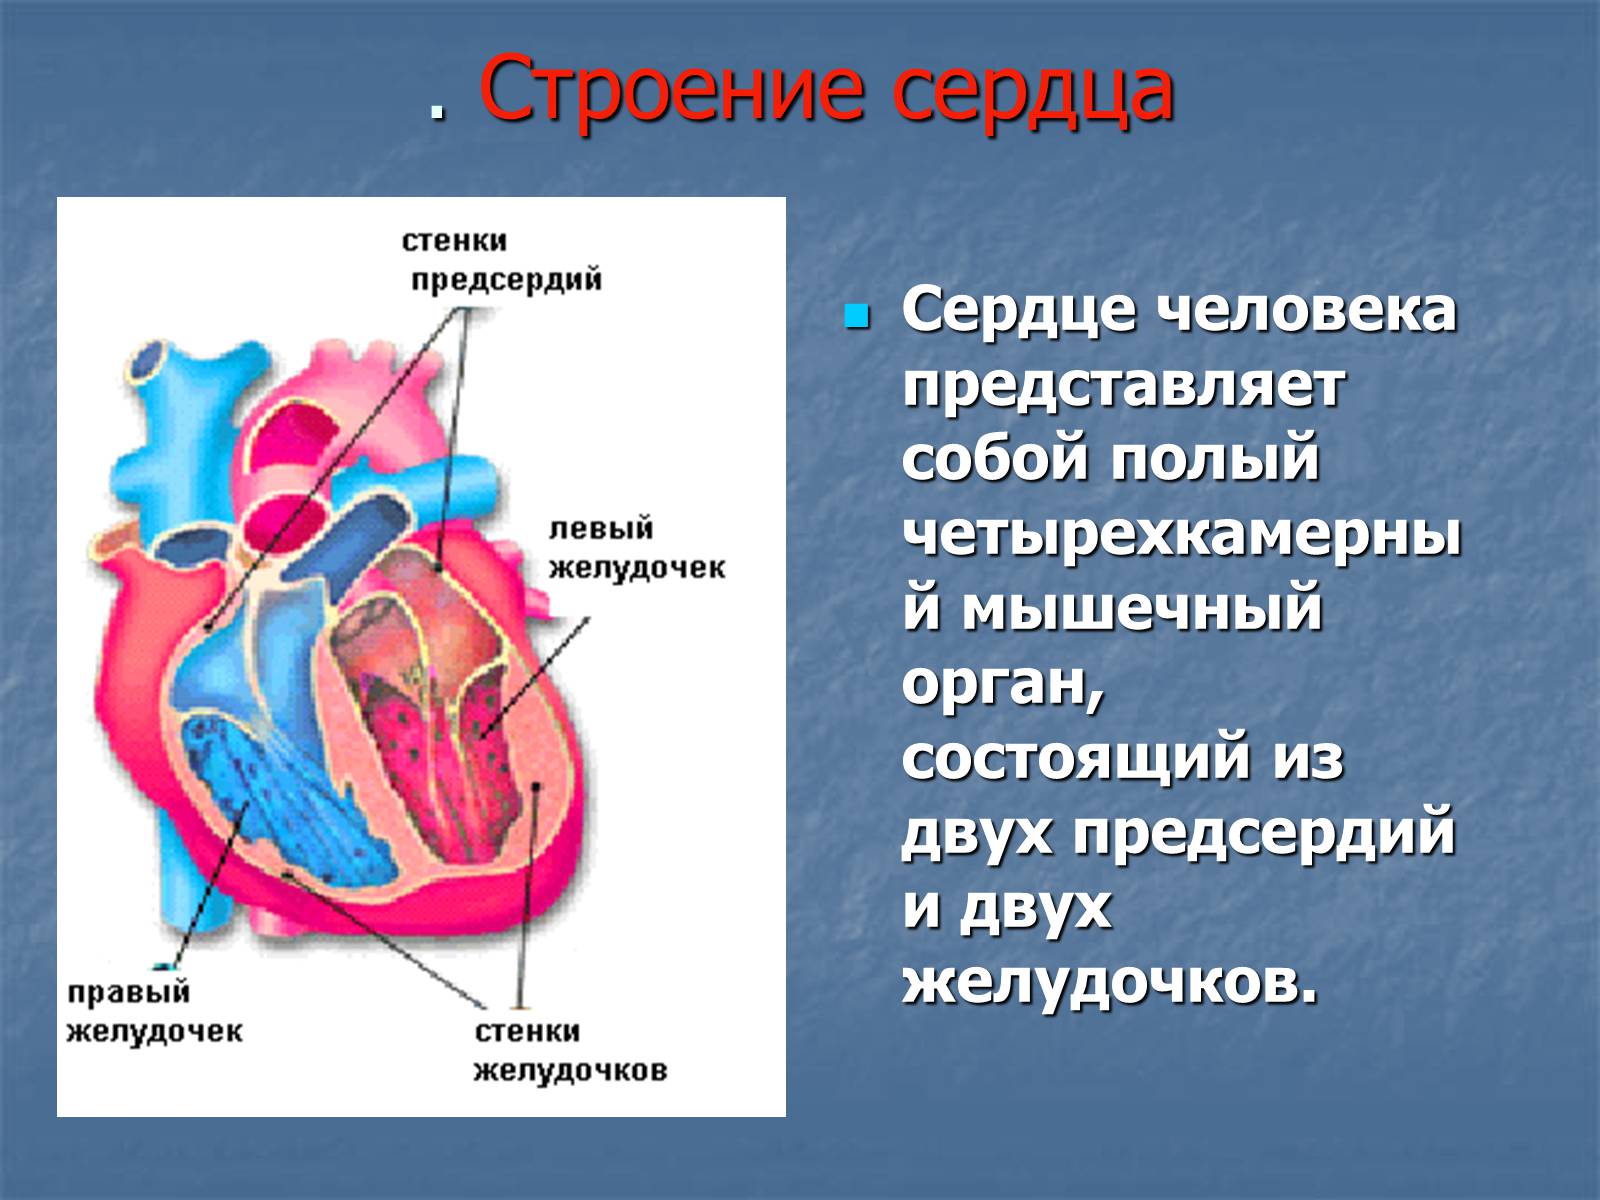 Правое предсердие является. Строение желудочков сердца анатомия. 2 Желудочка и 2 предсердия. Сердце анатомия желудочки и предсердия. Строение сердца человека желудочки и предсердия.